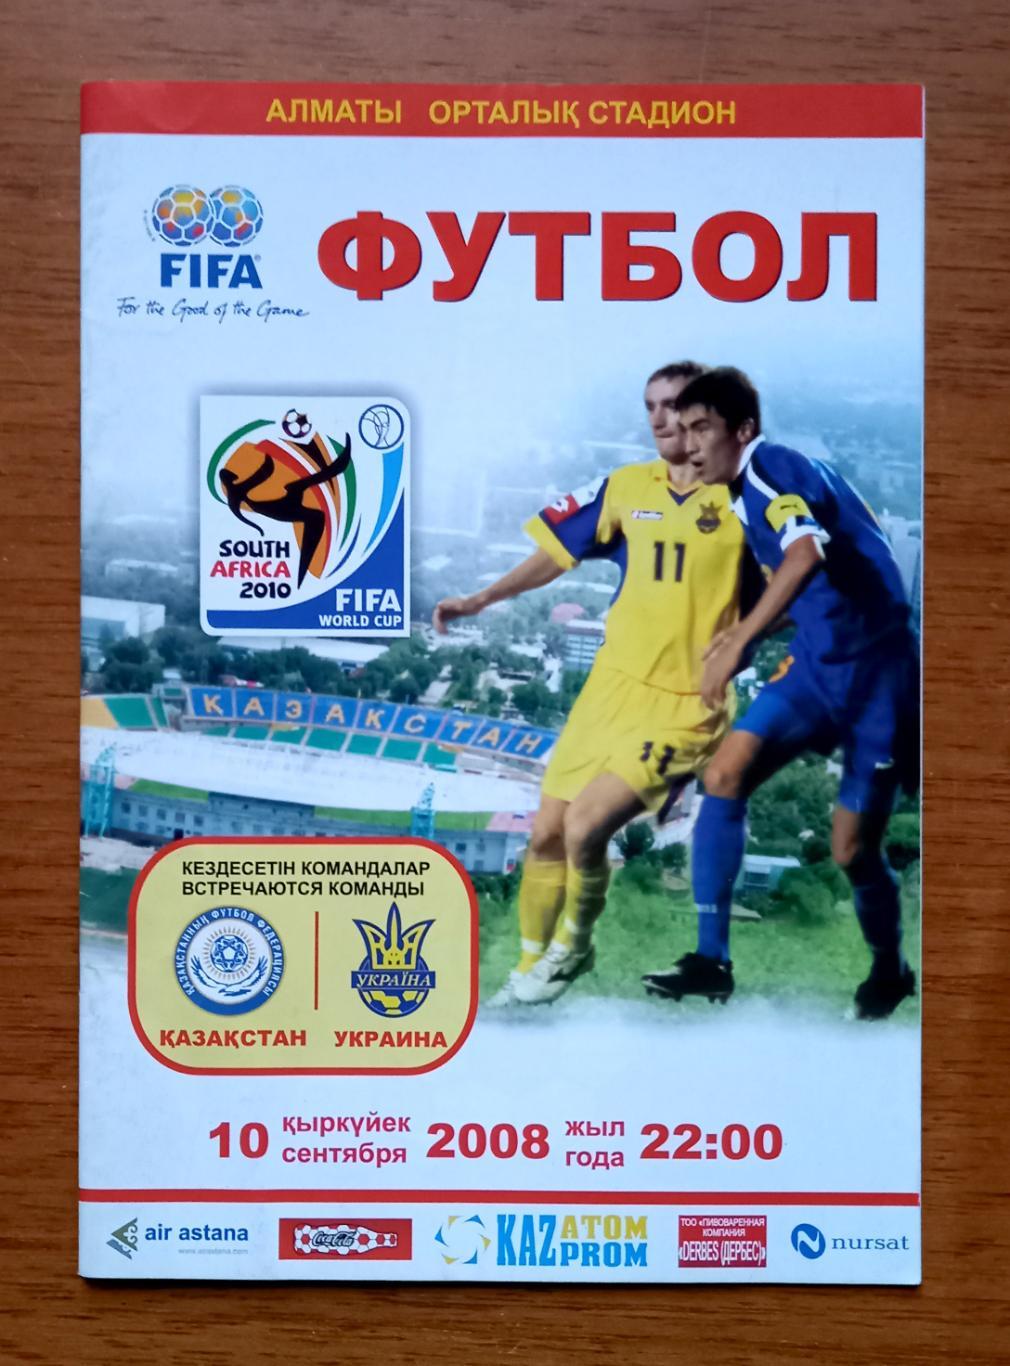 Футбол. Программа. Казахстан - Украина. 10.09.2008. Отборочный матч ЧМ 2010